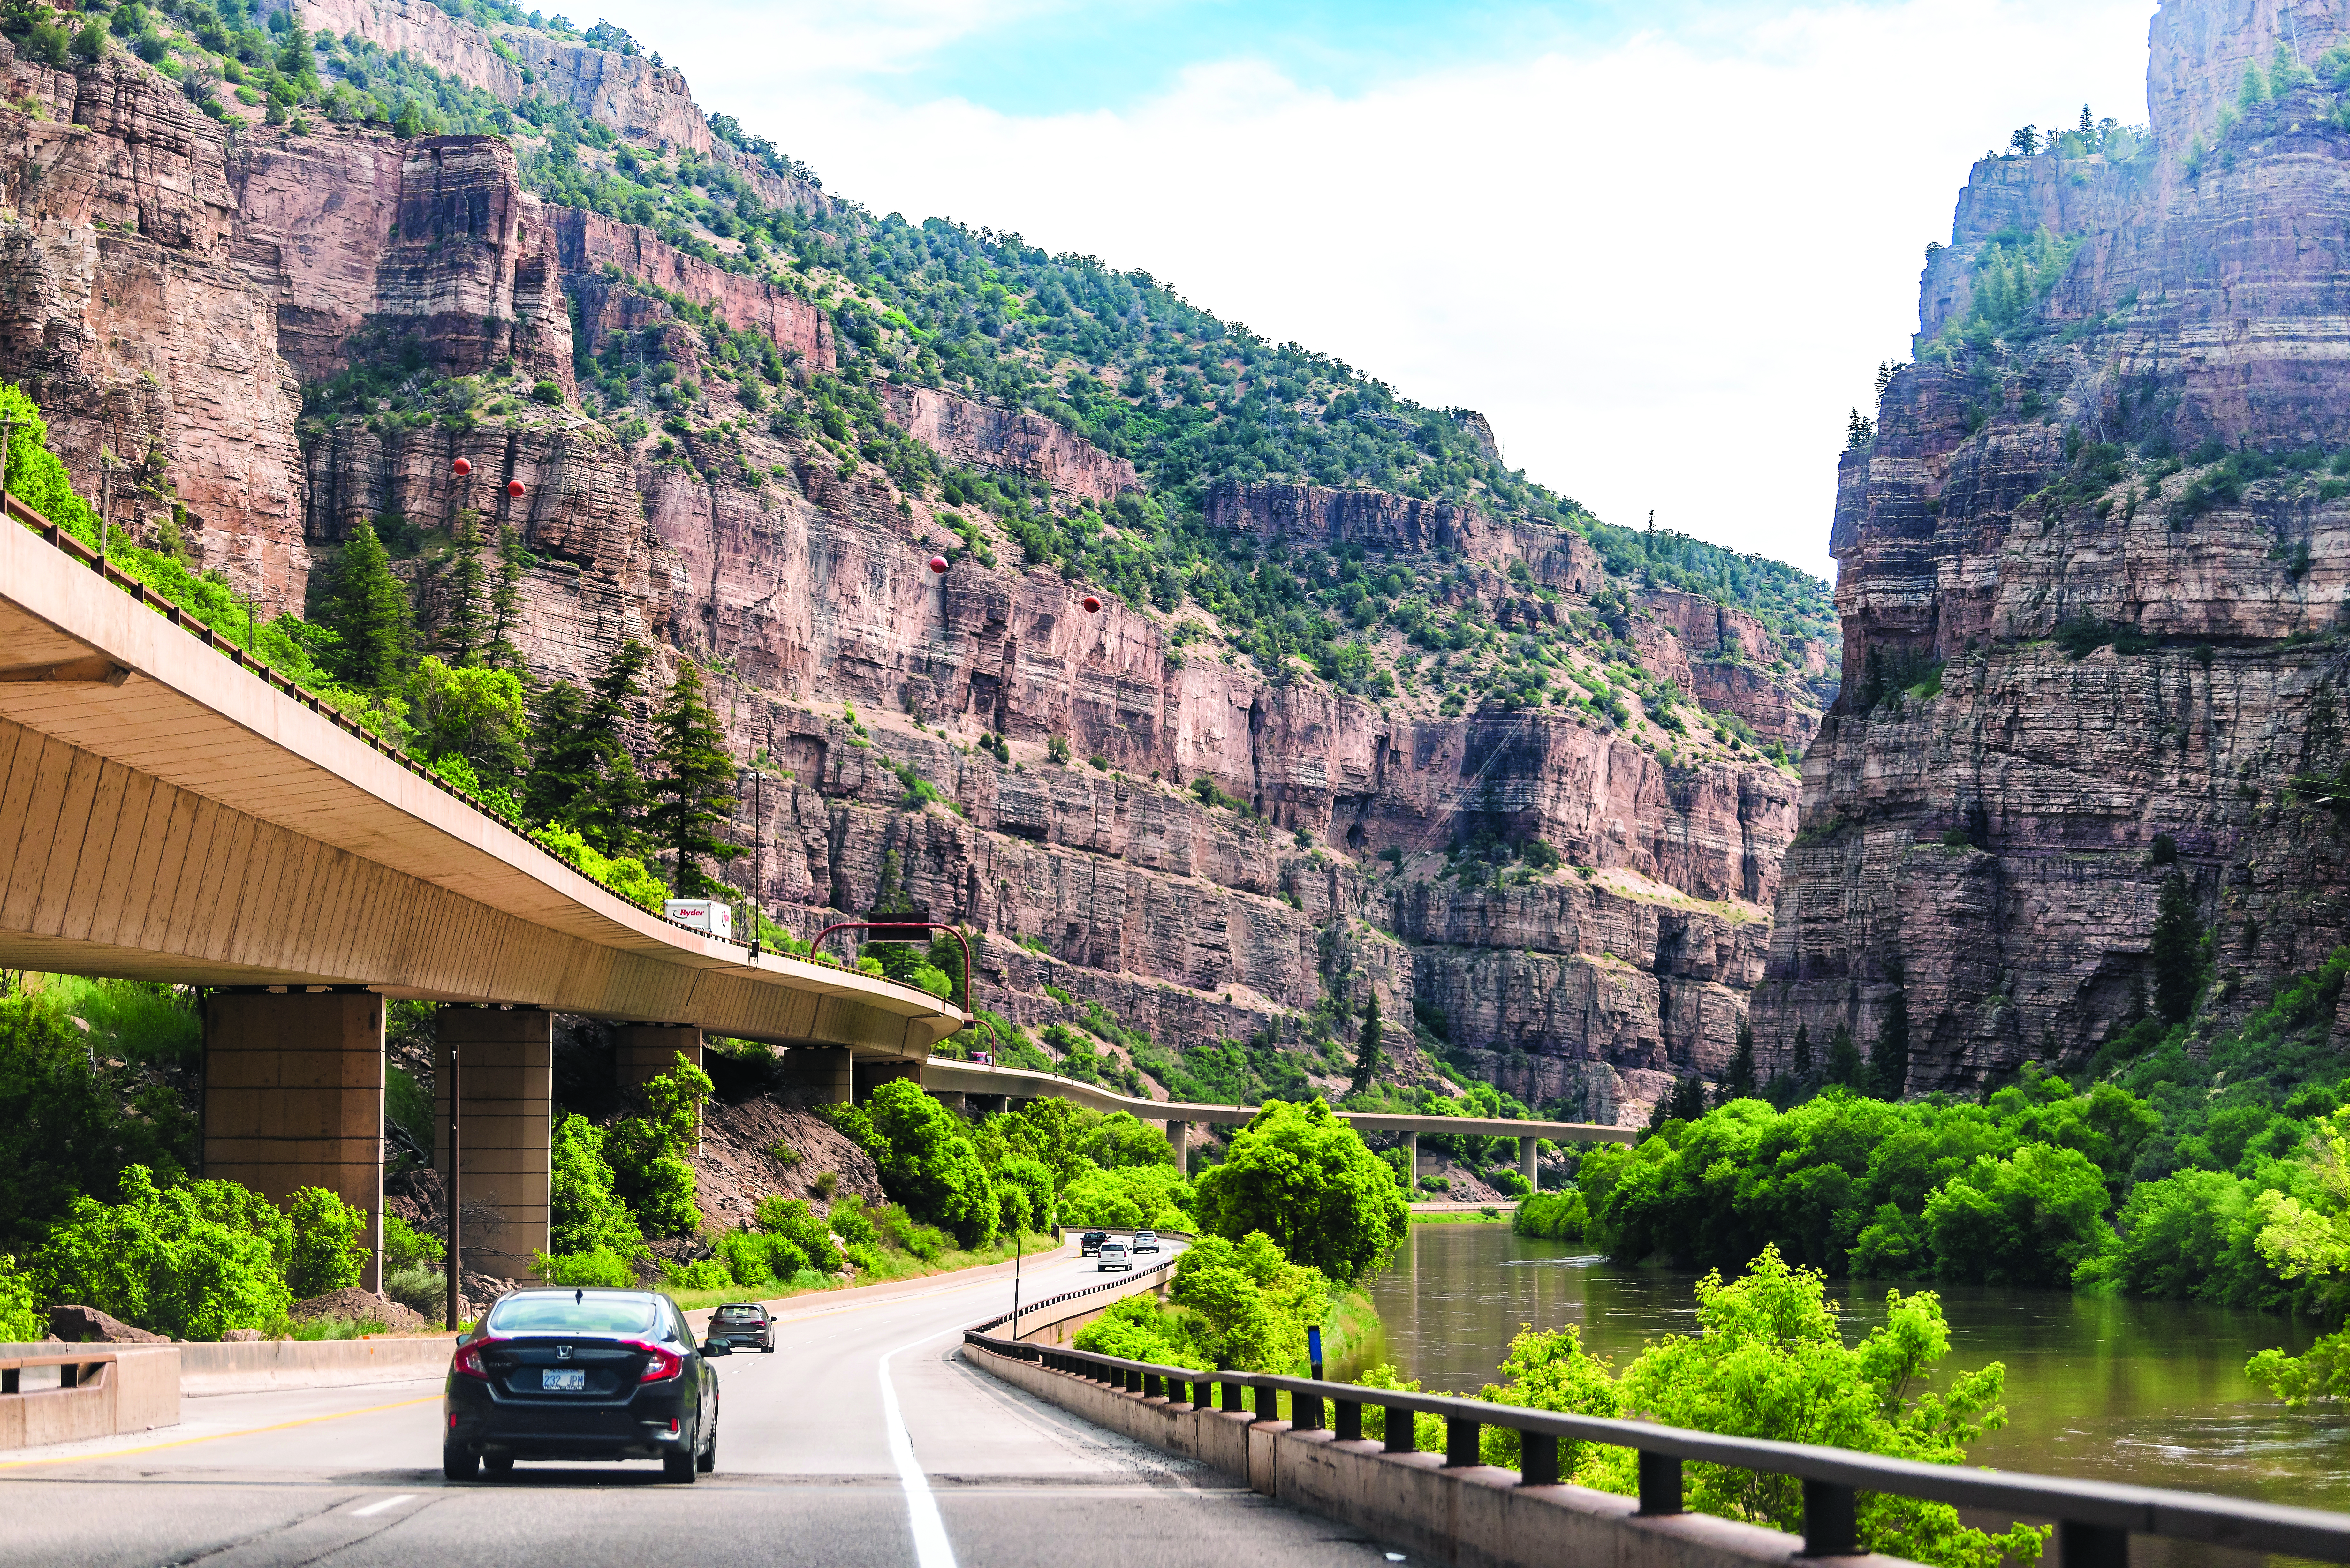 Highway through a canyon